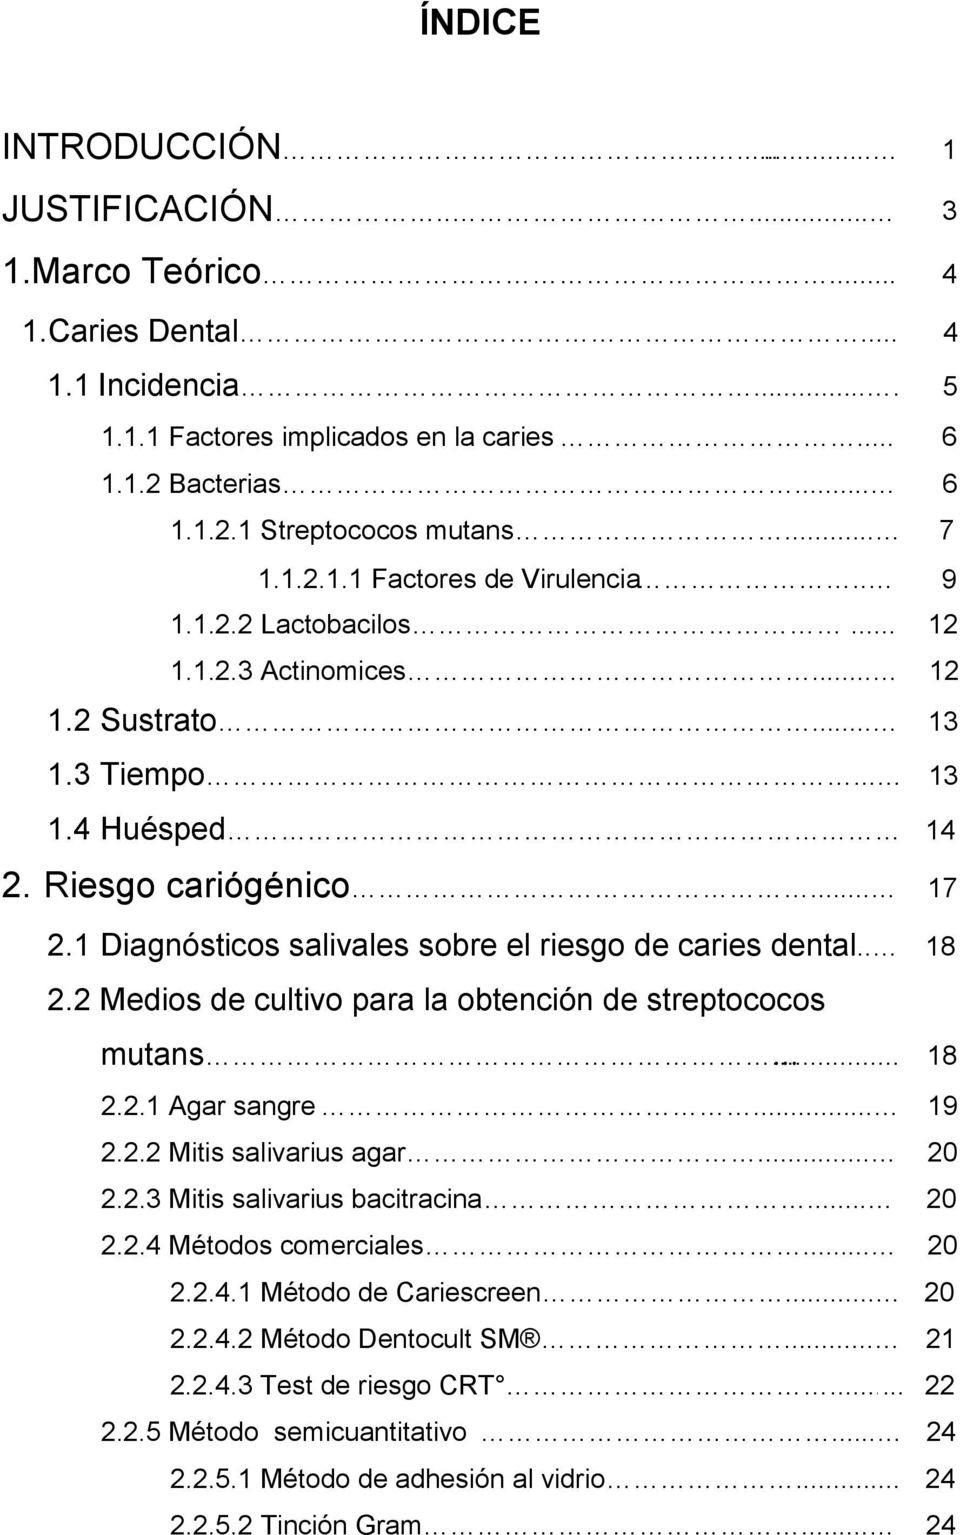 1 Diagnósticos salivales sobre el riesgo de caries dental.. 18 2.2 Medios de cultivo para la obtención de streptococos mutans... 18 2.2.1 Agar sangre... 19 2.2.2 Mitis salivarius agar... 20 2.2.3 Mitis salivarius bacitracina.